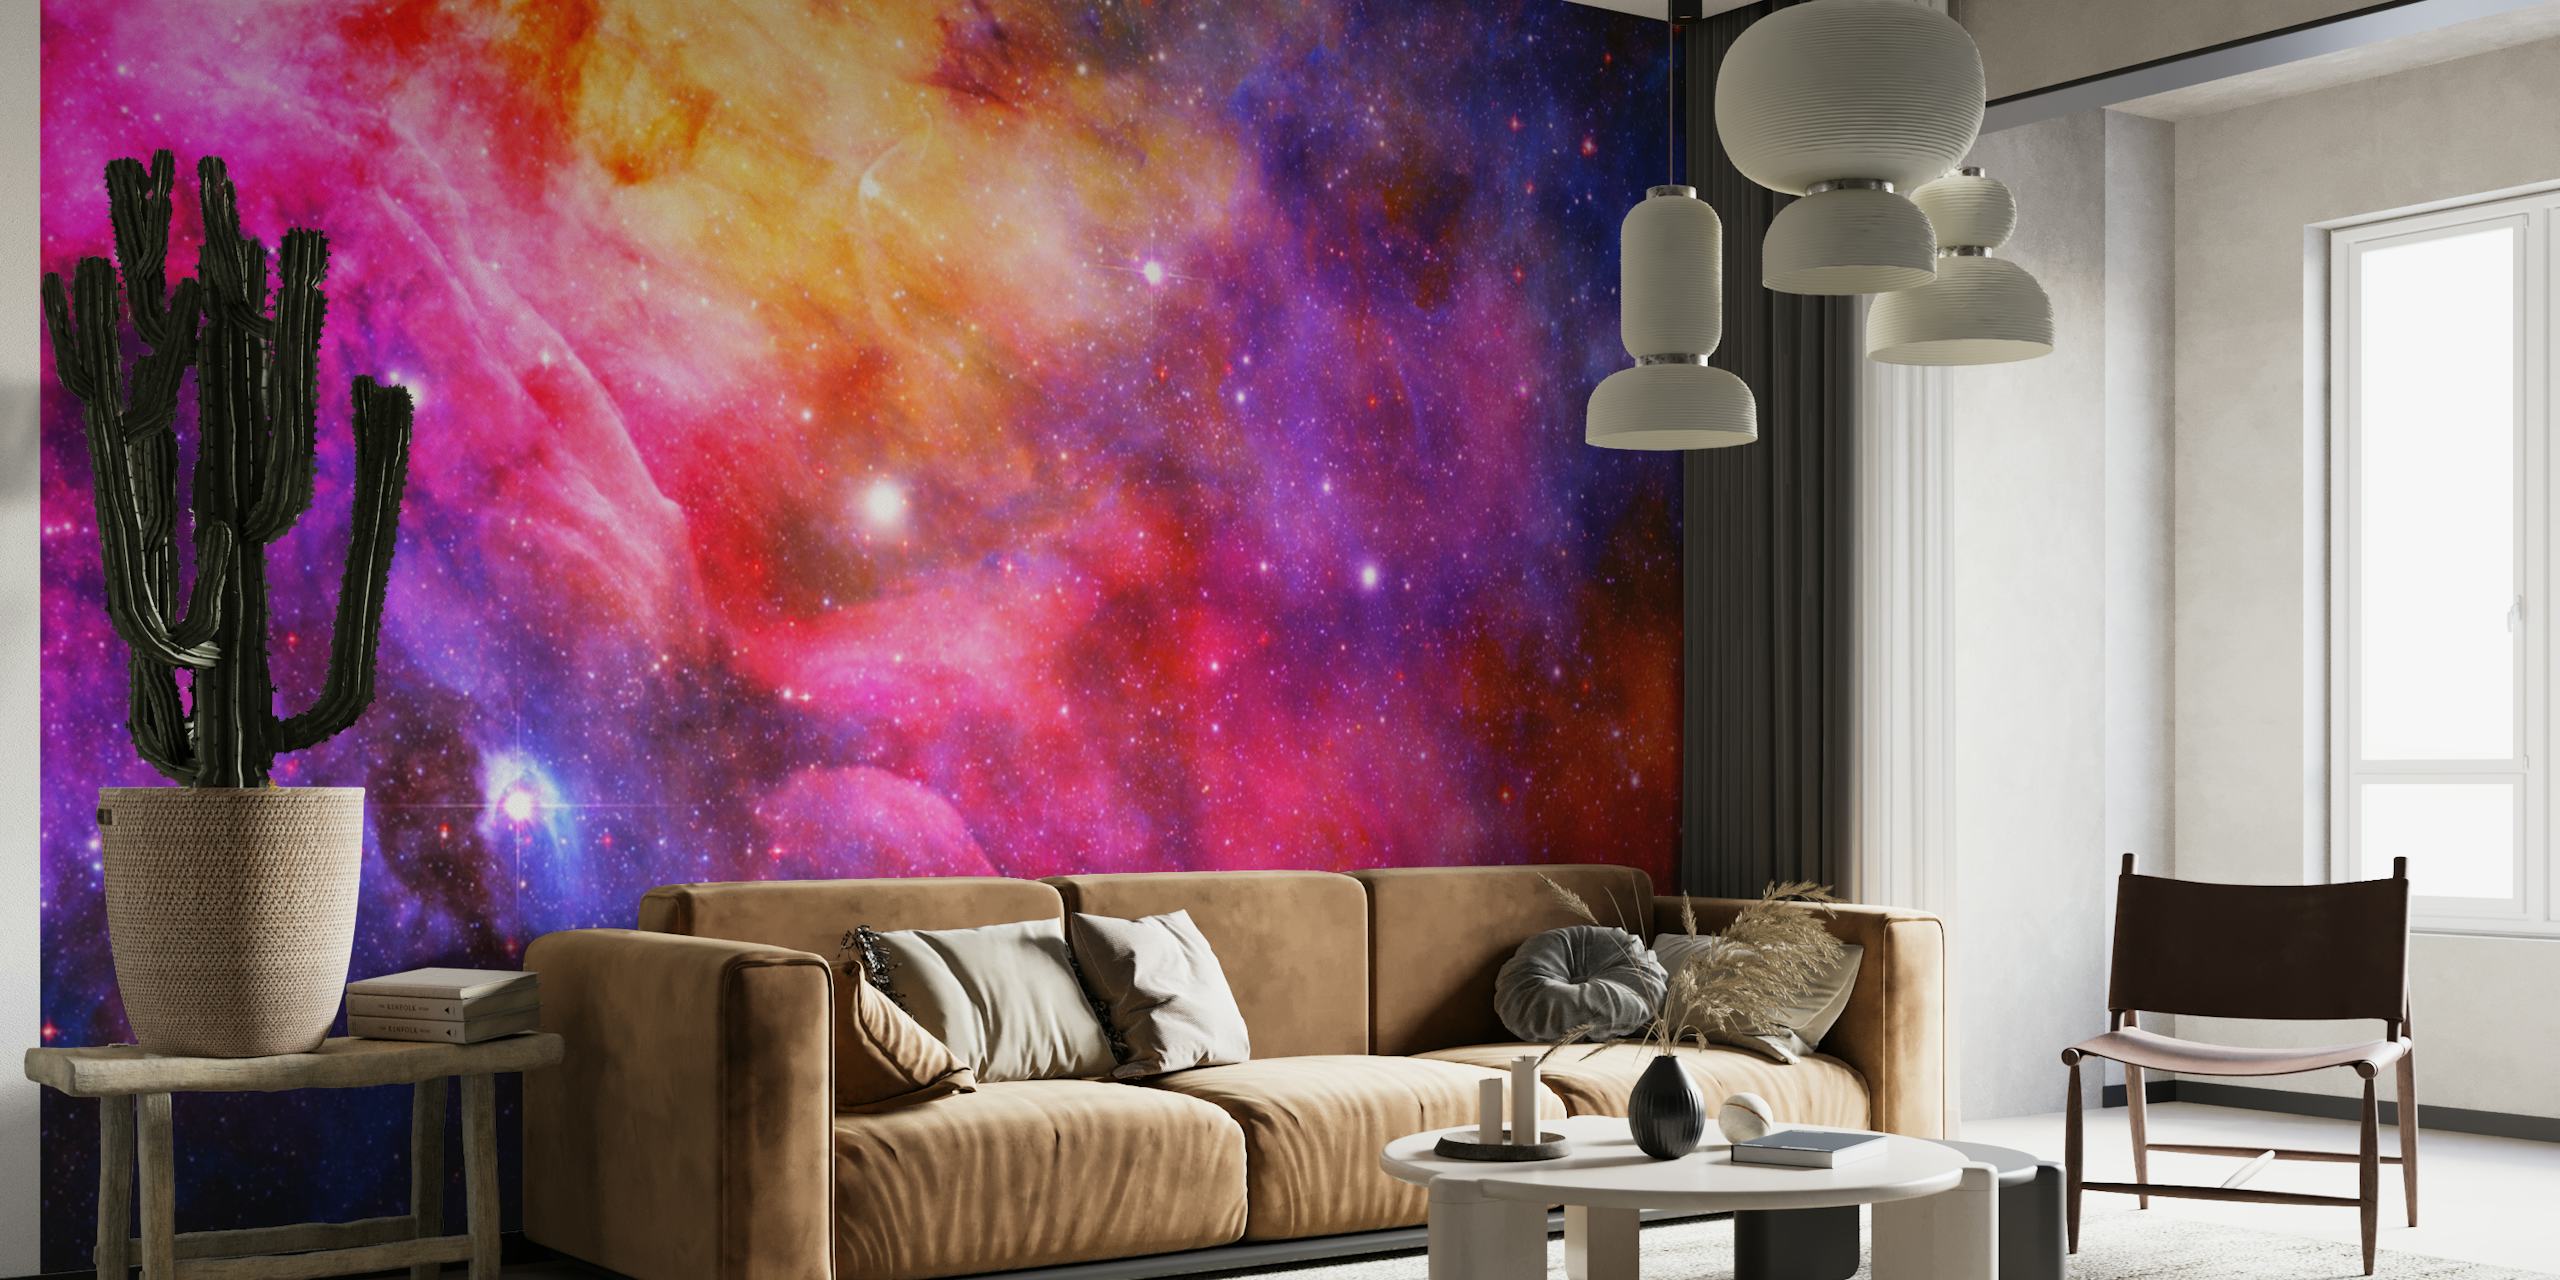 Farbenfrohe Weltraum-Galaxie-Wandtapete mit Sternen und Nebelmustern